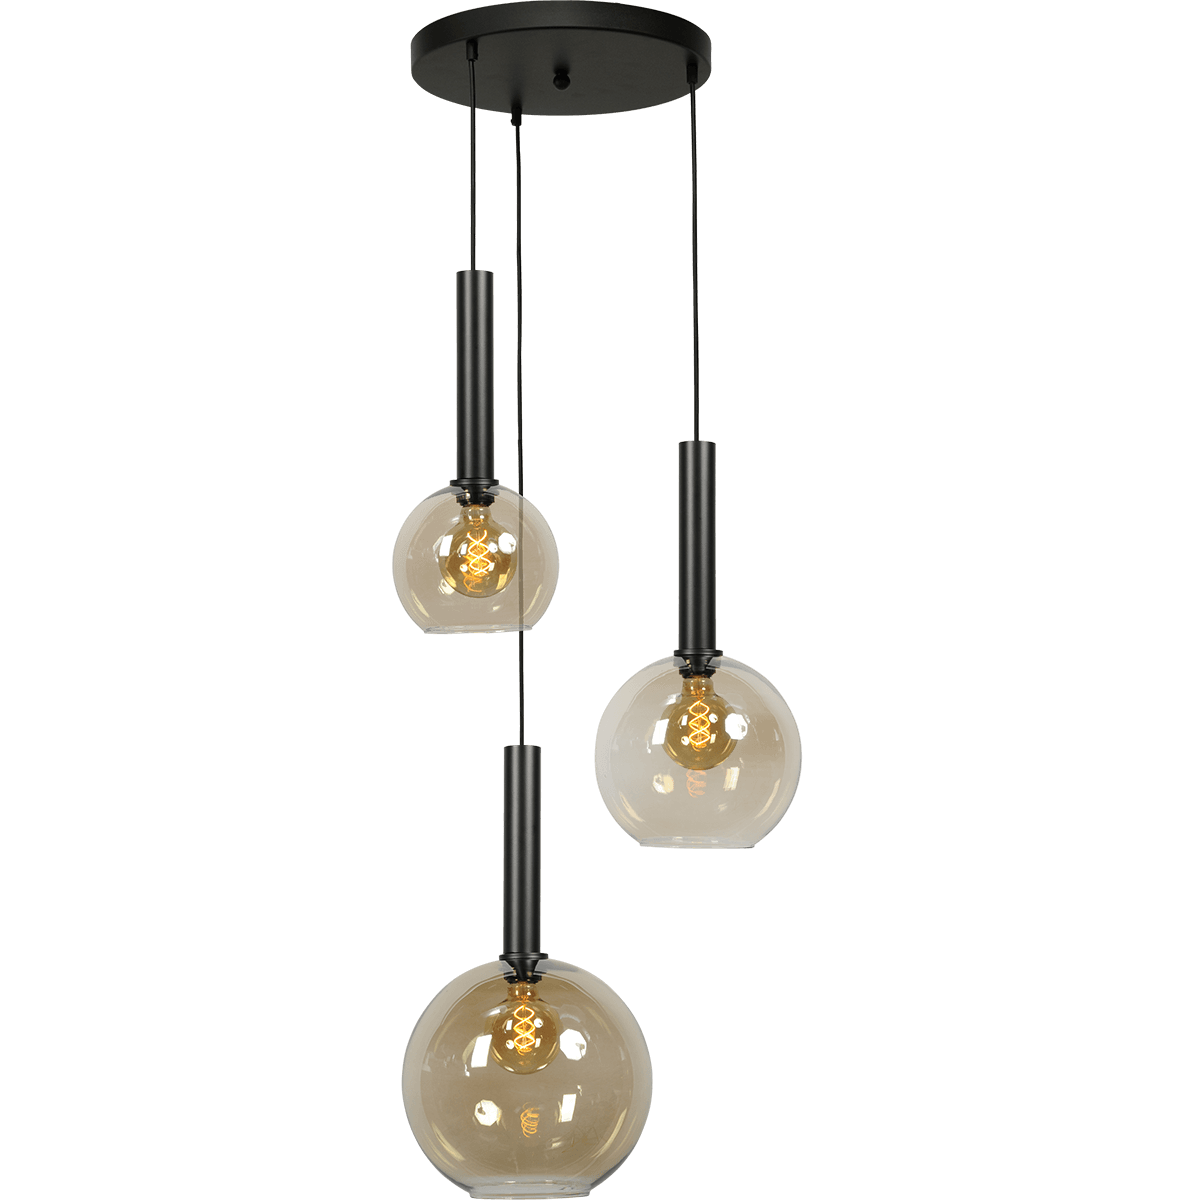 Hanglamp Bella -  3-lichts mat zwart Ø35cm - zwarte pvc kabel 150cm + glas 1x 62260-05-20-20 - + 1x 62260-05-20-25 + 1x 62260-05-20-30 - MASTERLIGHT